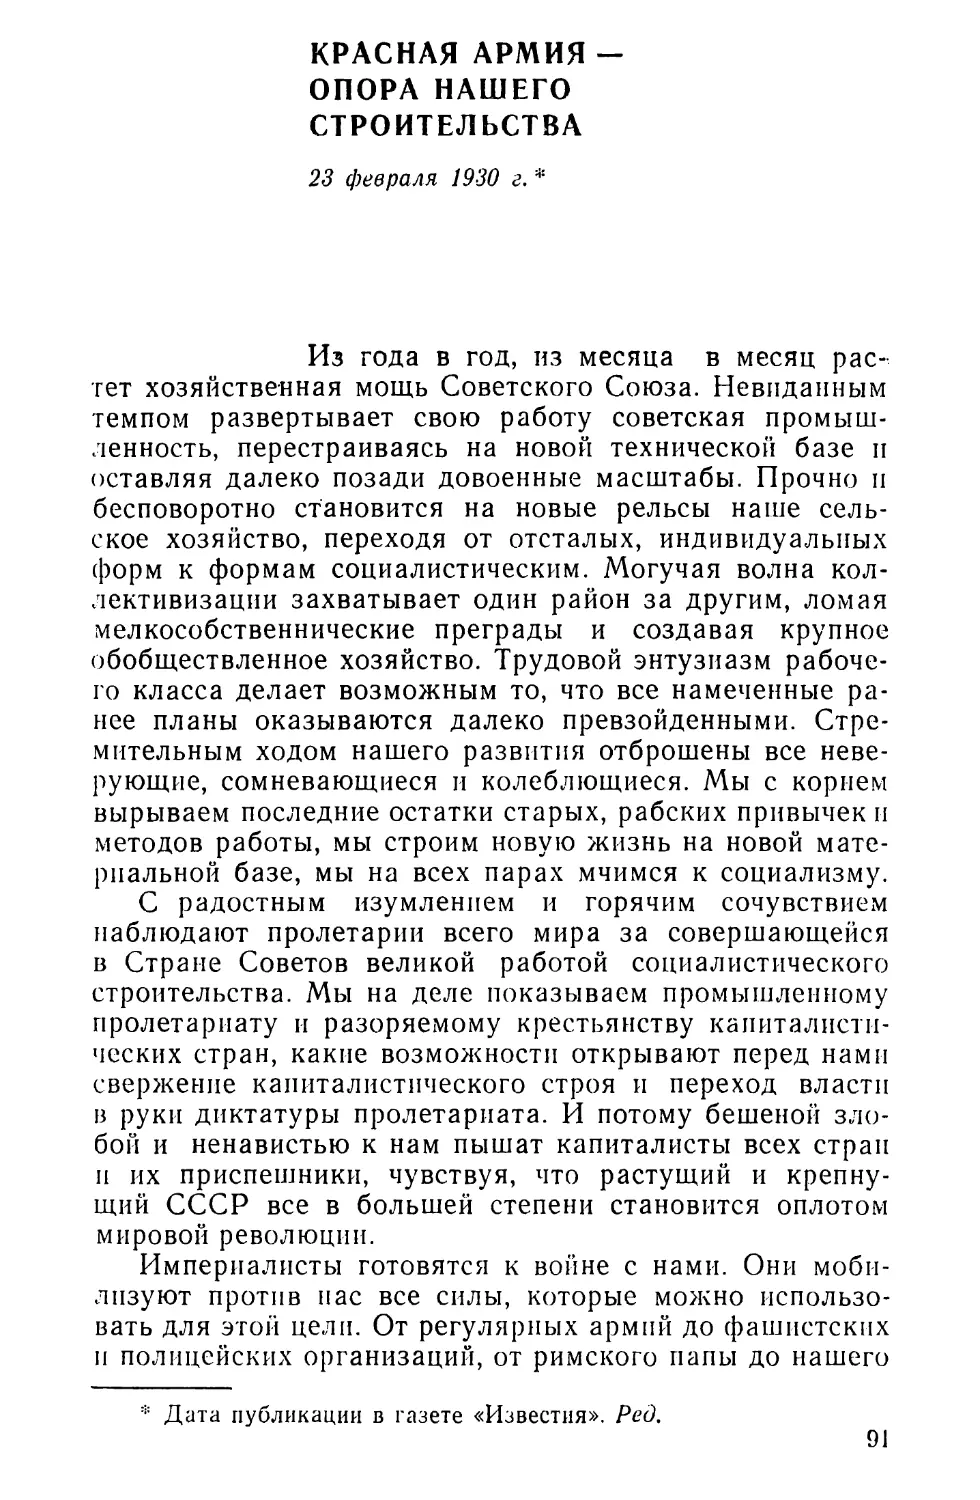 КРАСНАЯ АРМИЯ-ОПОРА НАШЕГО СТРОИТЕЛЬСТВА. 23 февраля 1930 г.